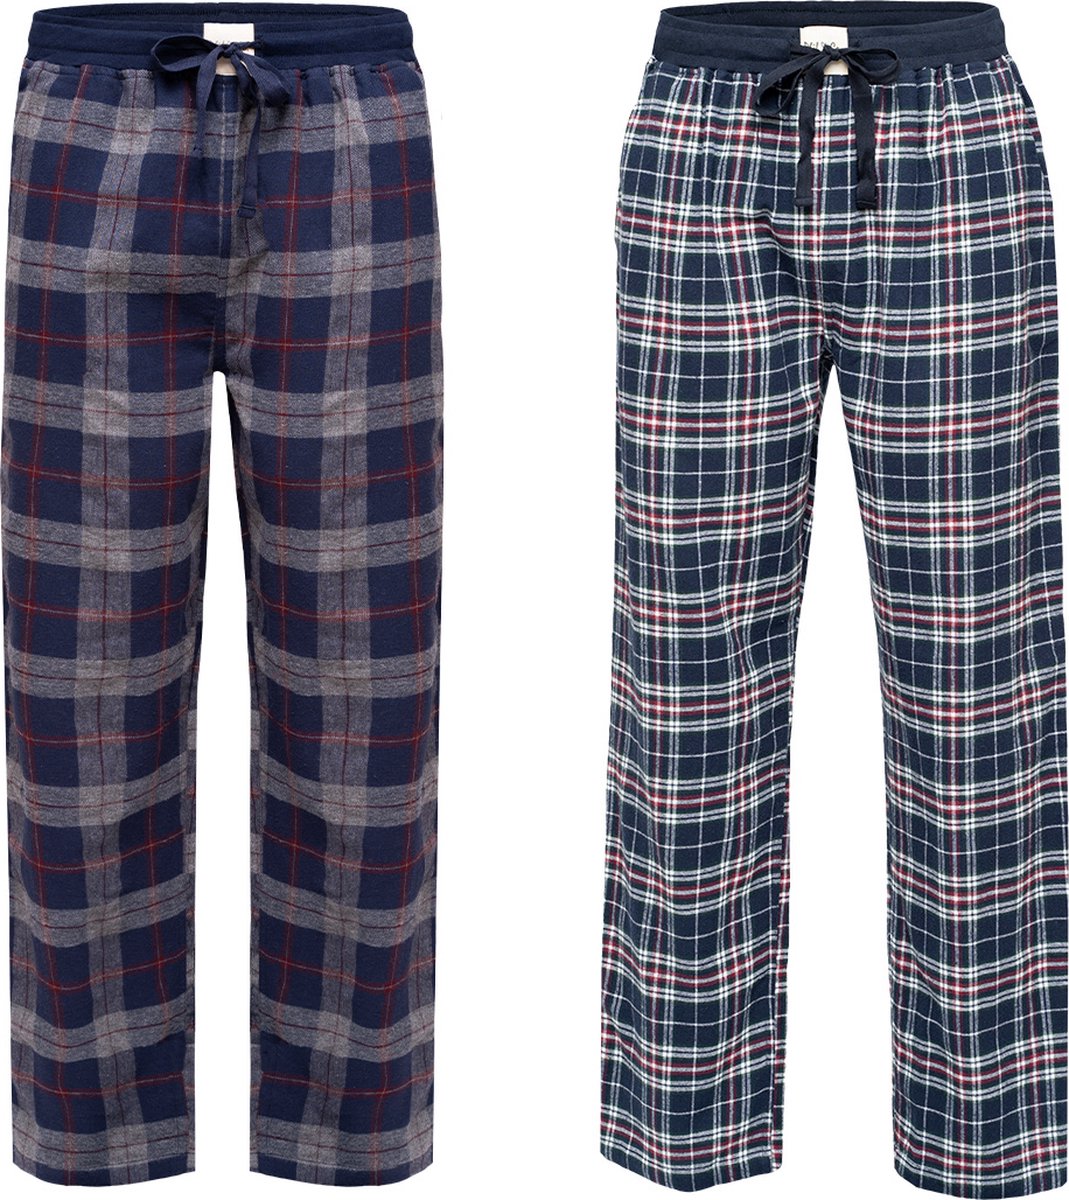 Phil & Co Heren Pyjamabroek Lang Geruit Flanel 2-Pack Rood / Blauw - Maat M